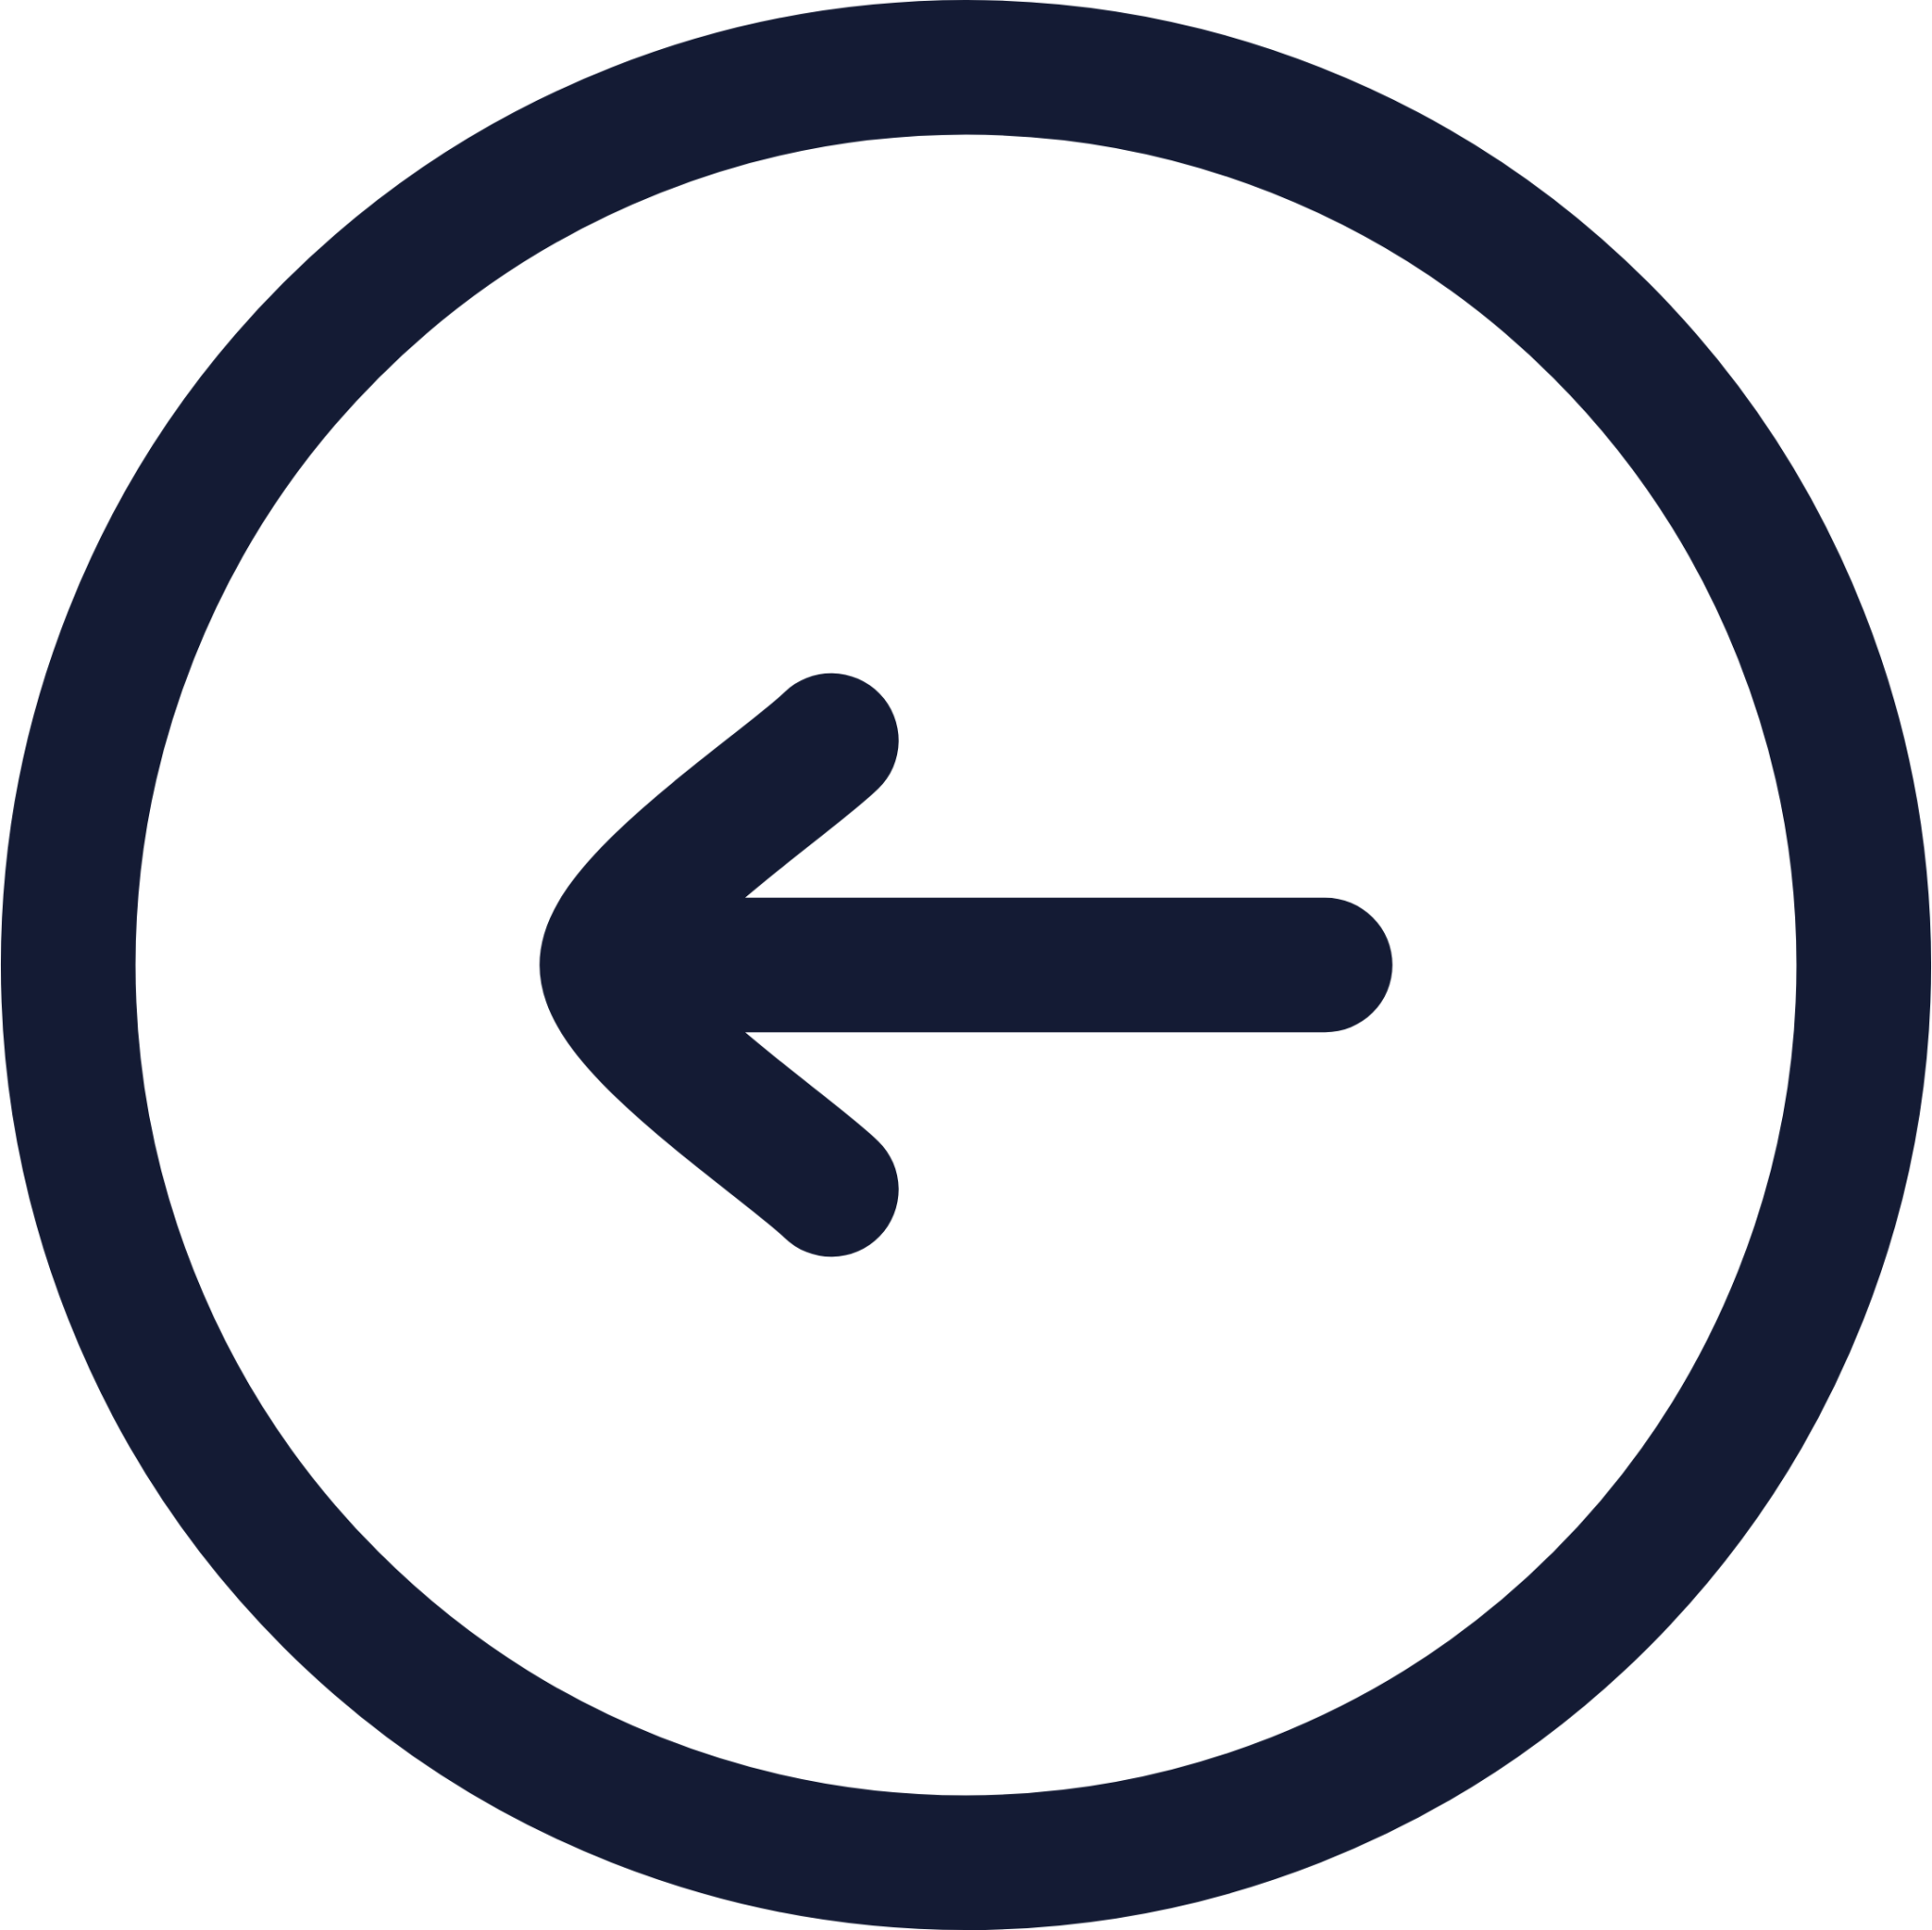 login circle icon